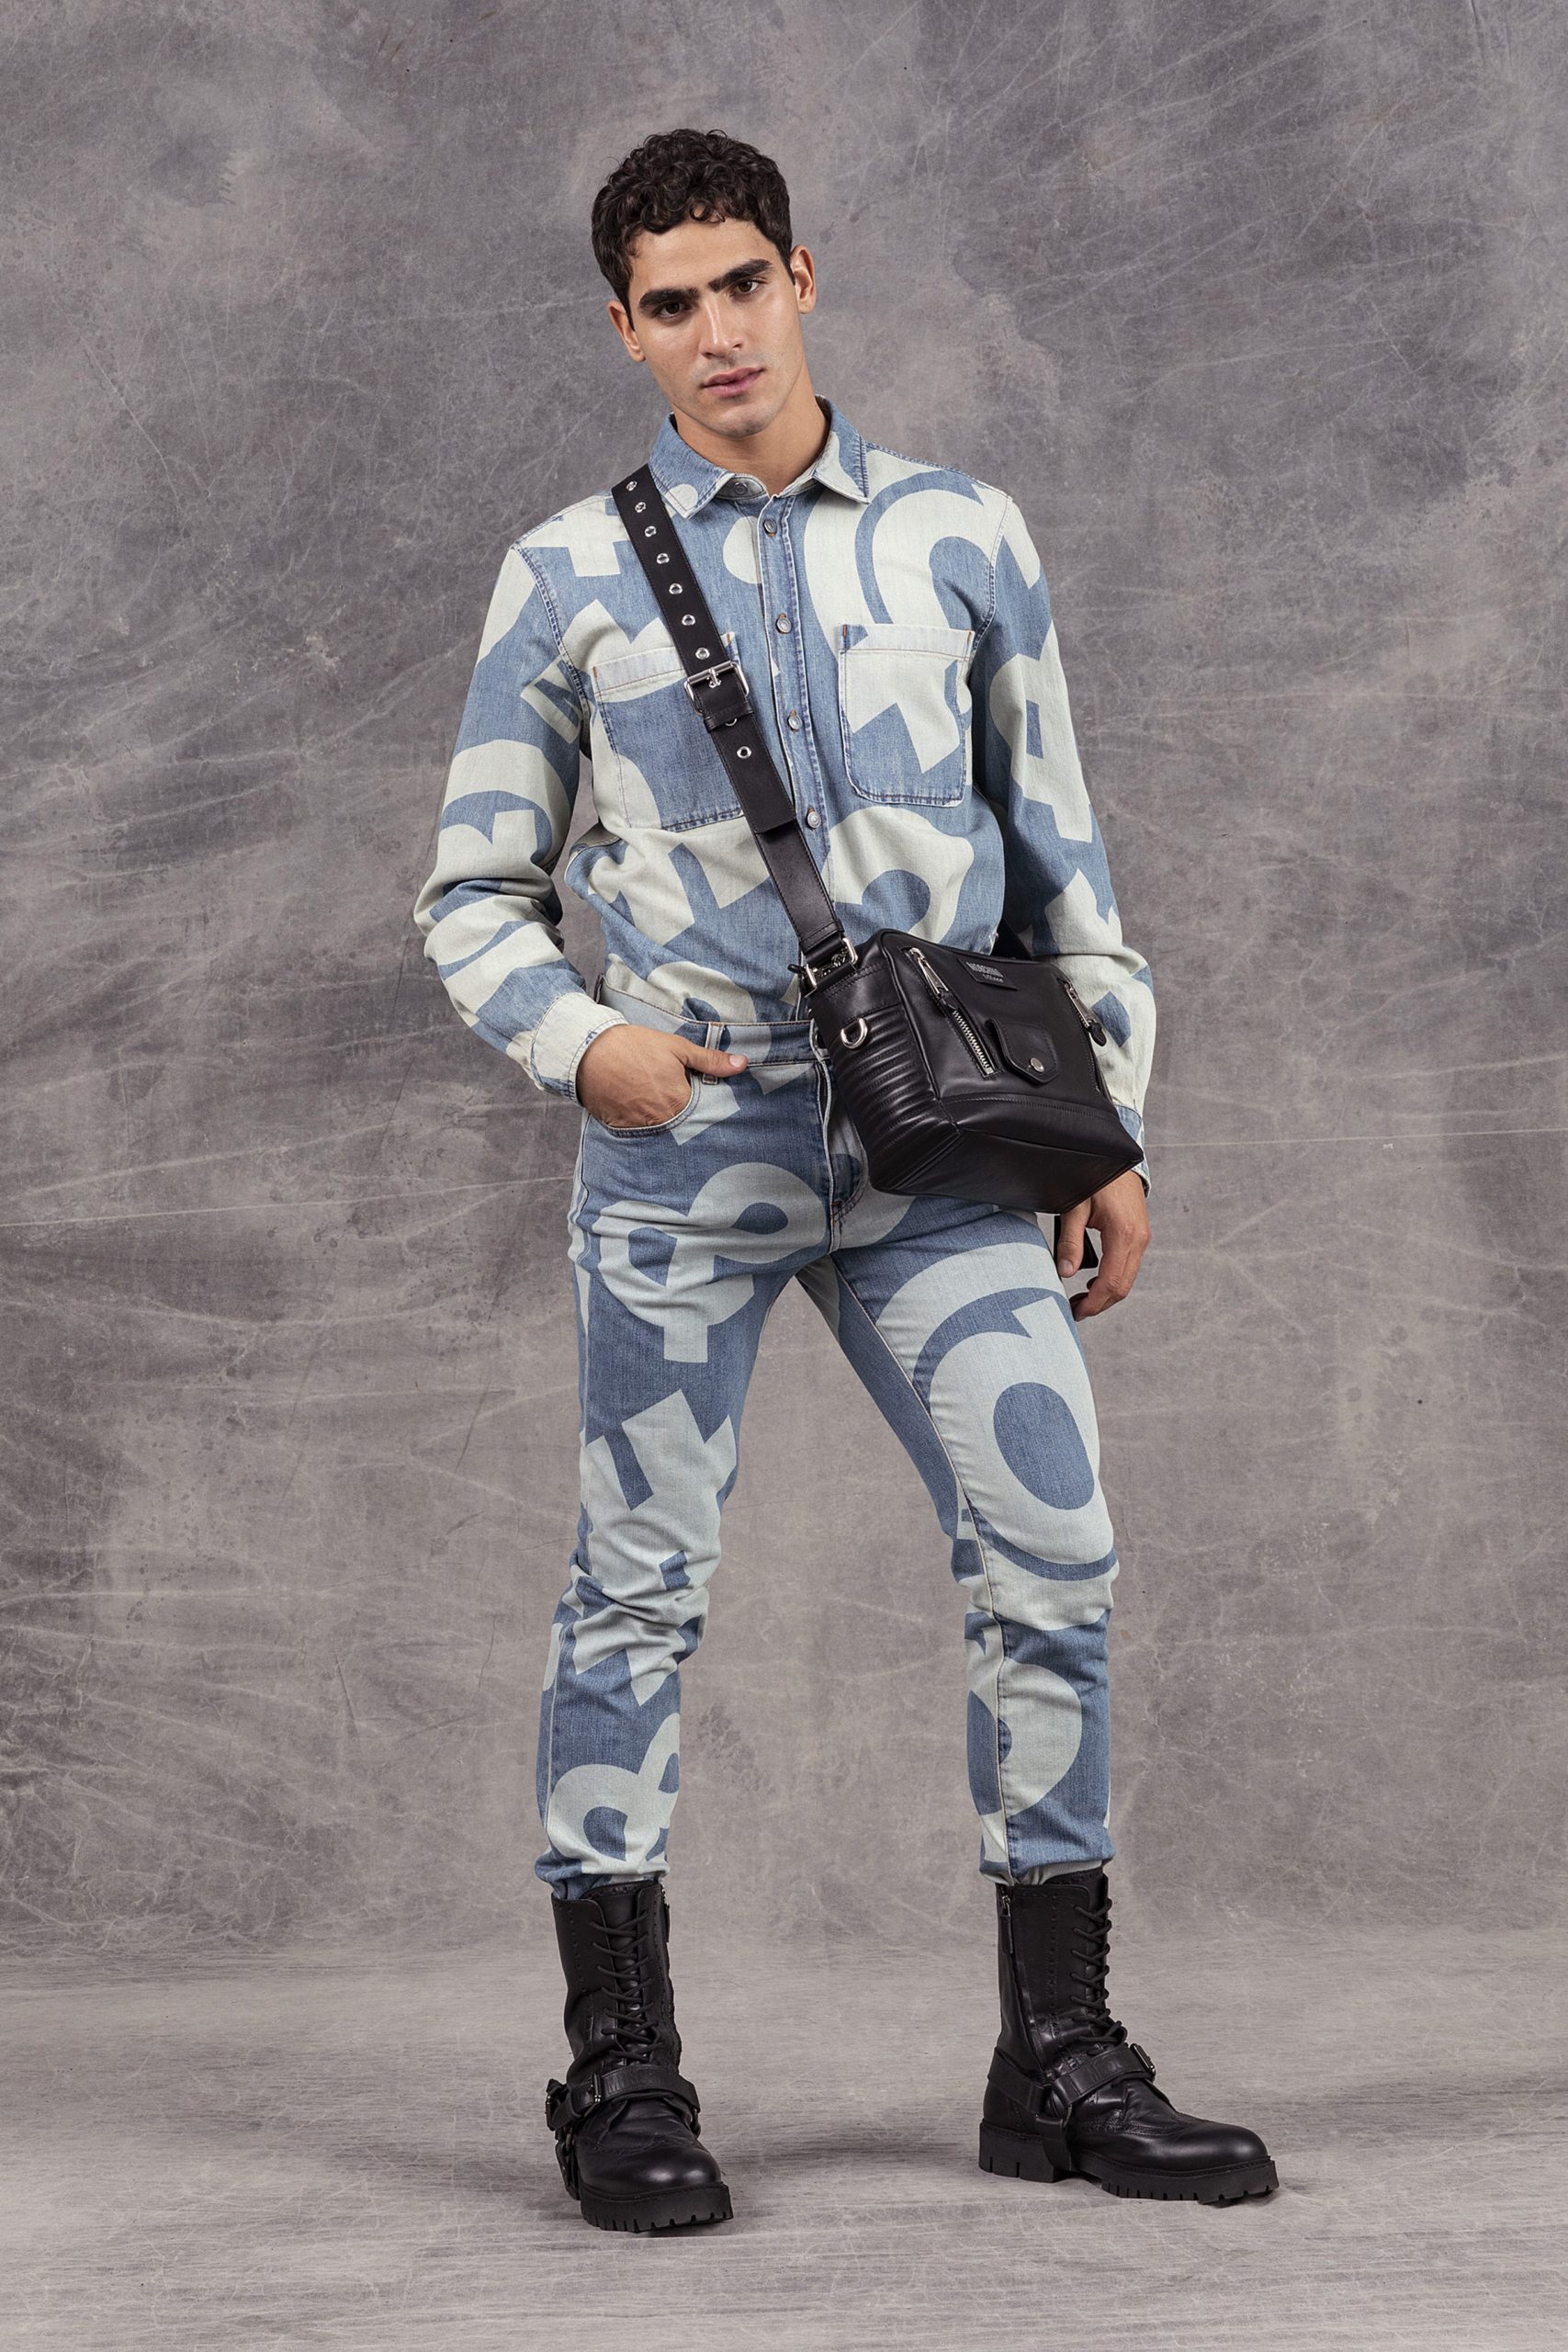 Деним, пиджаки и необычные принты: новая мужская коллекция Moschino 